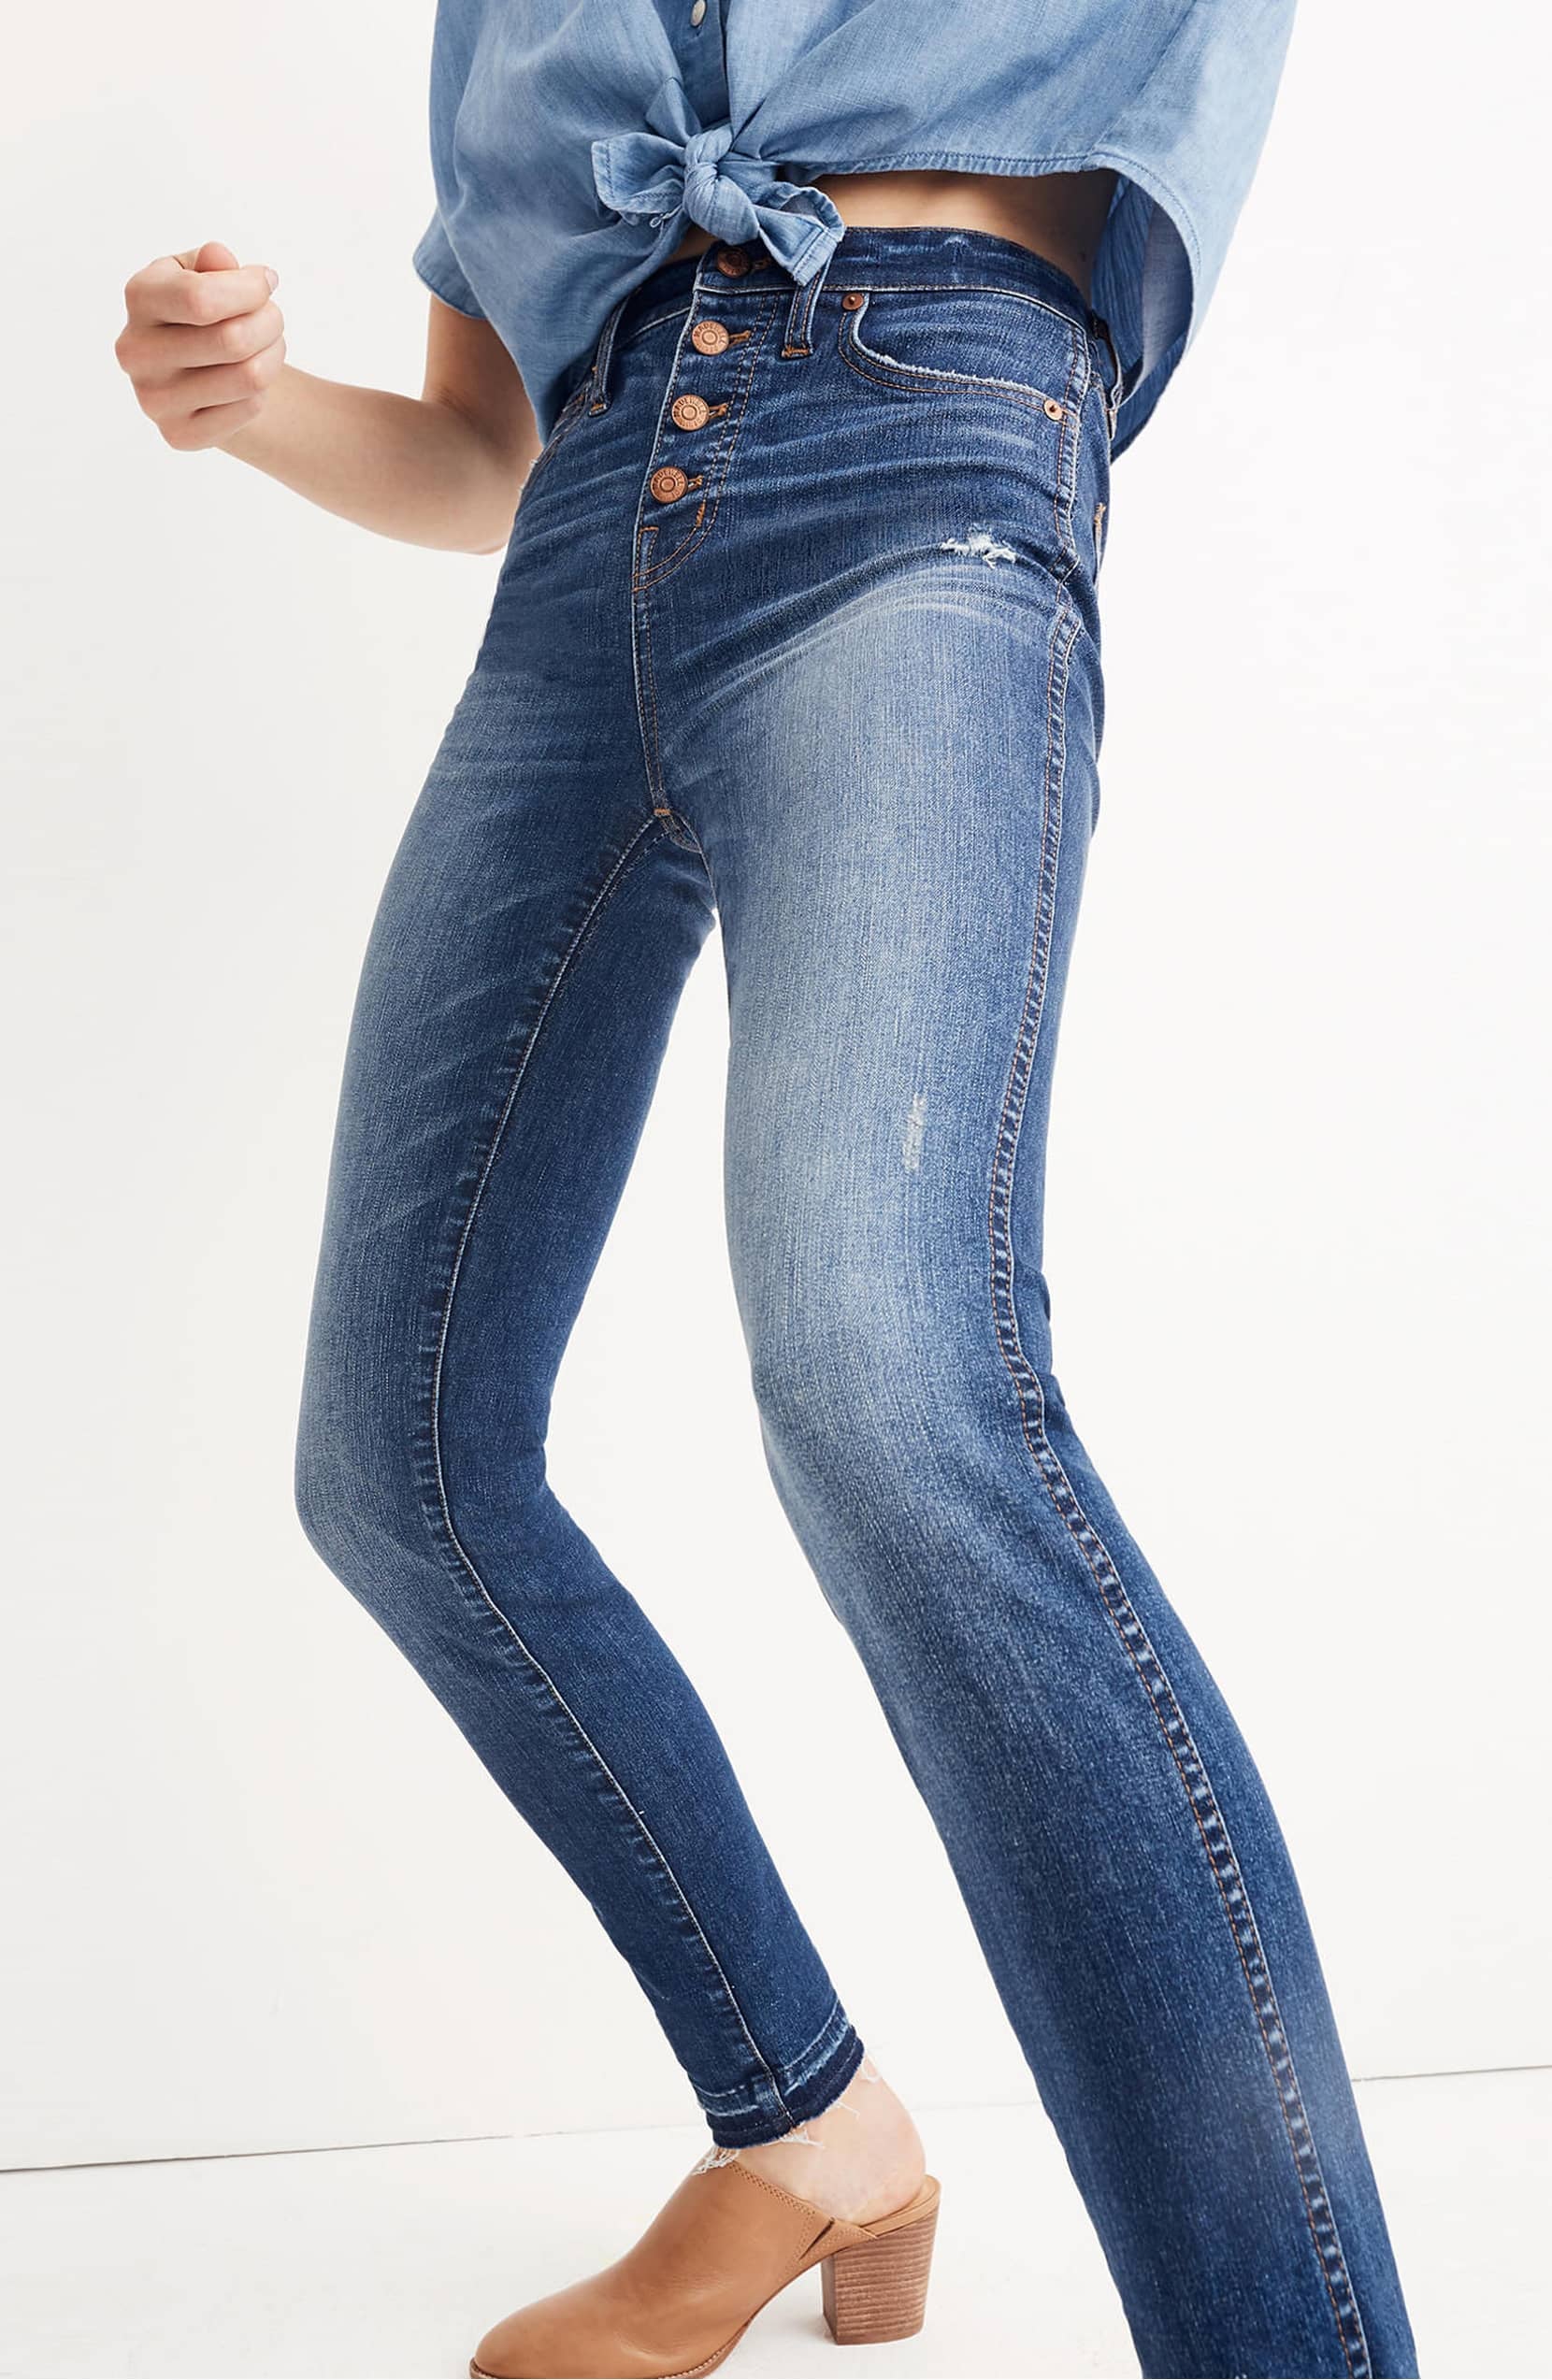 High rise джинсы. High Rise Jeans (джинсы с высокой посадкой). Джинсы по щиколотку женские. Джинсы с высокой посадкой (High Rise). Как расширить джинсы в щиколотке.